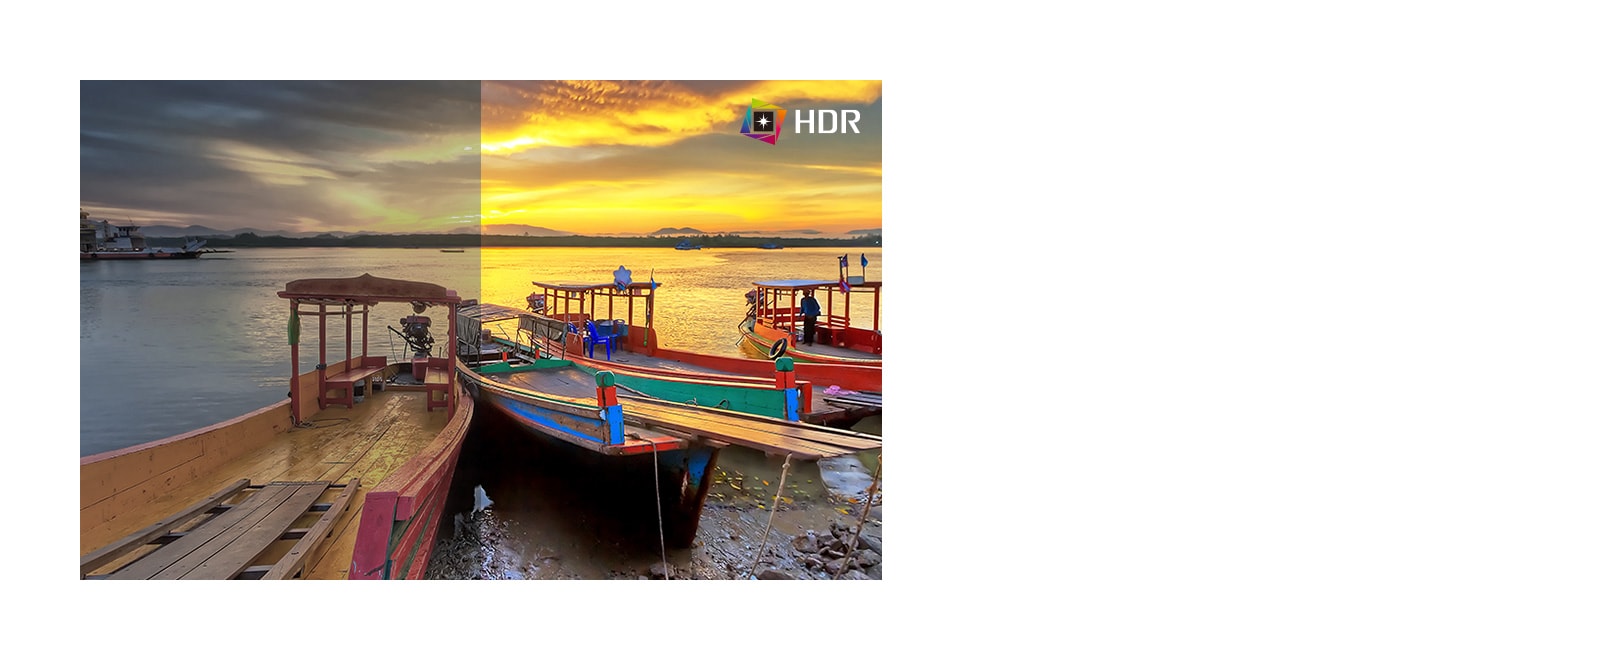 HDR, hỗ trợ các mức màu và độ sáng nhất định, so với SDR, hiển thị nội dung với màu sắc ấn tượng